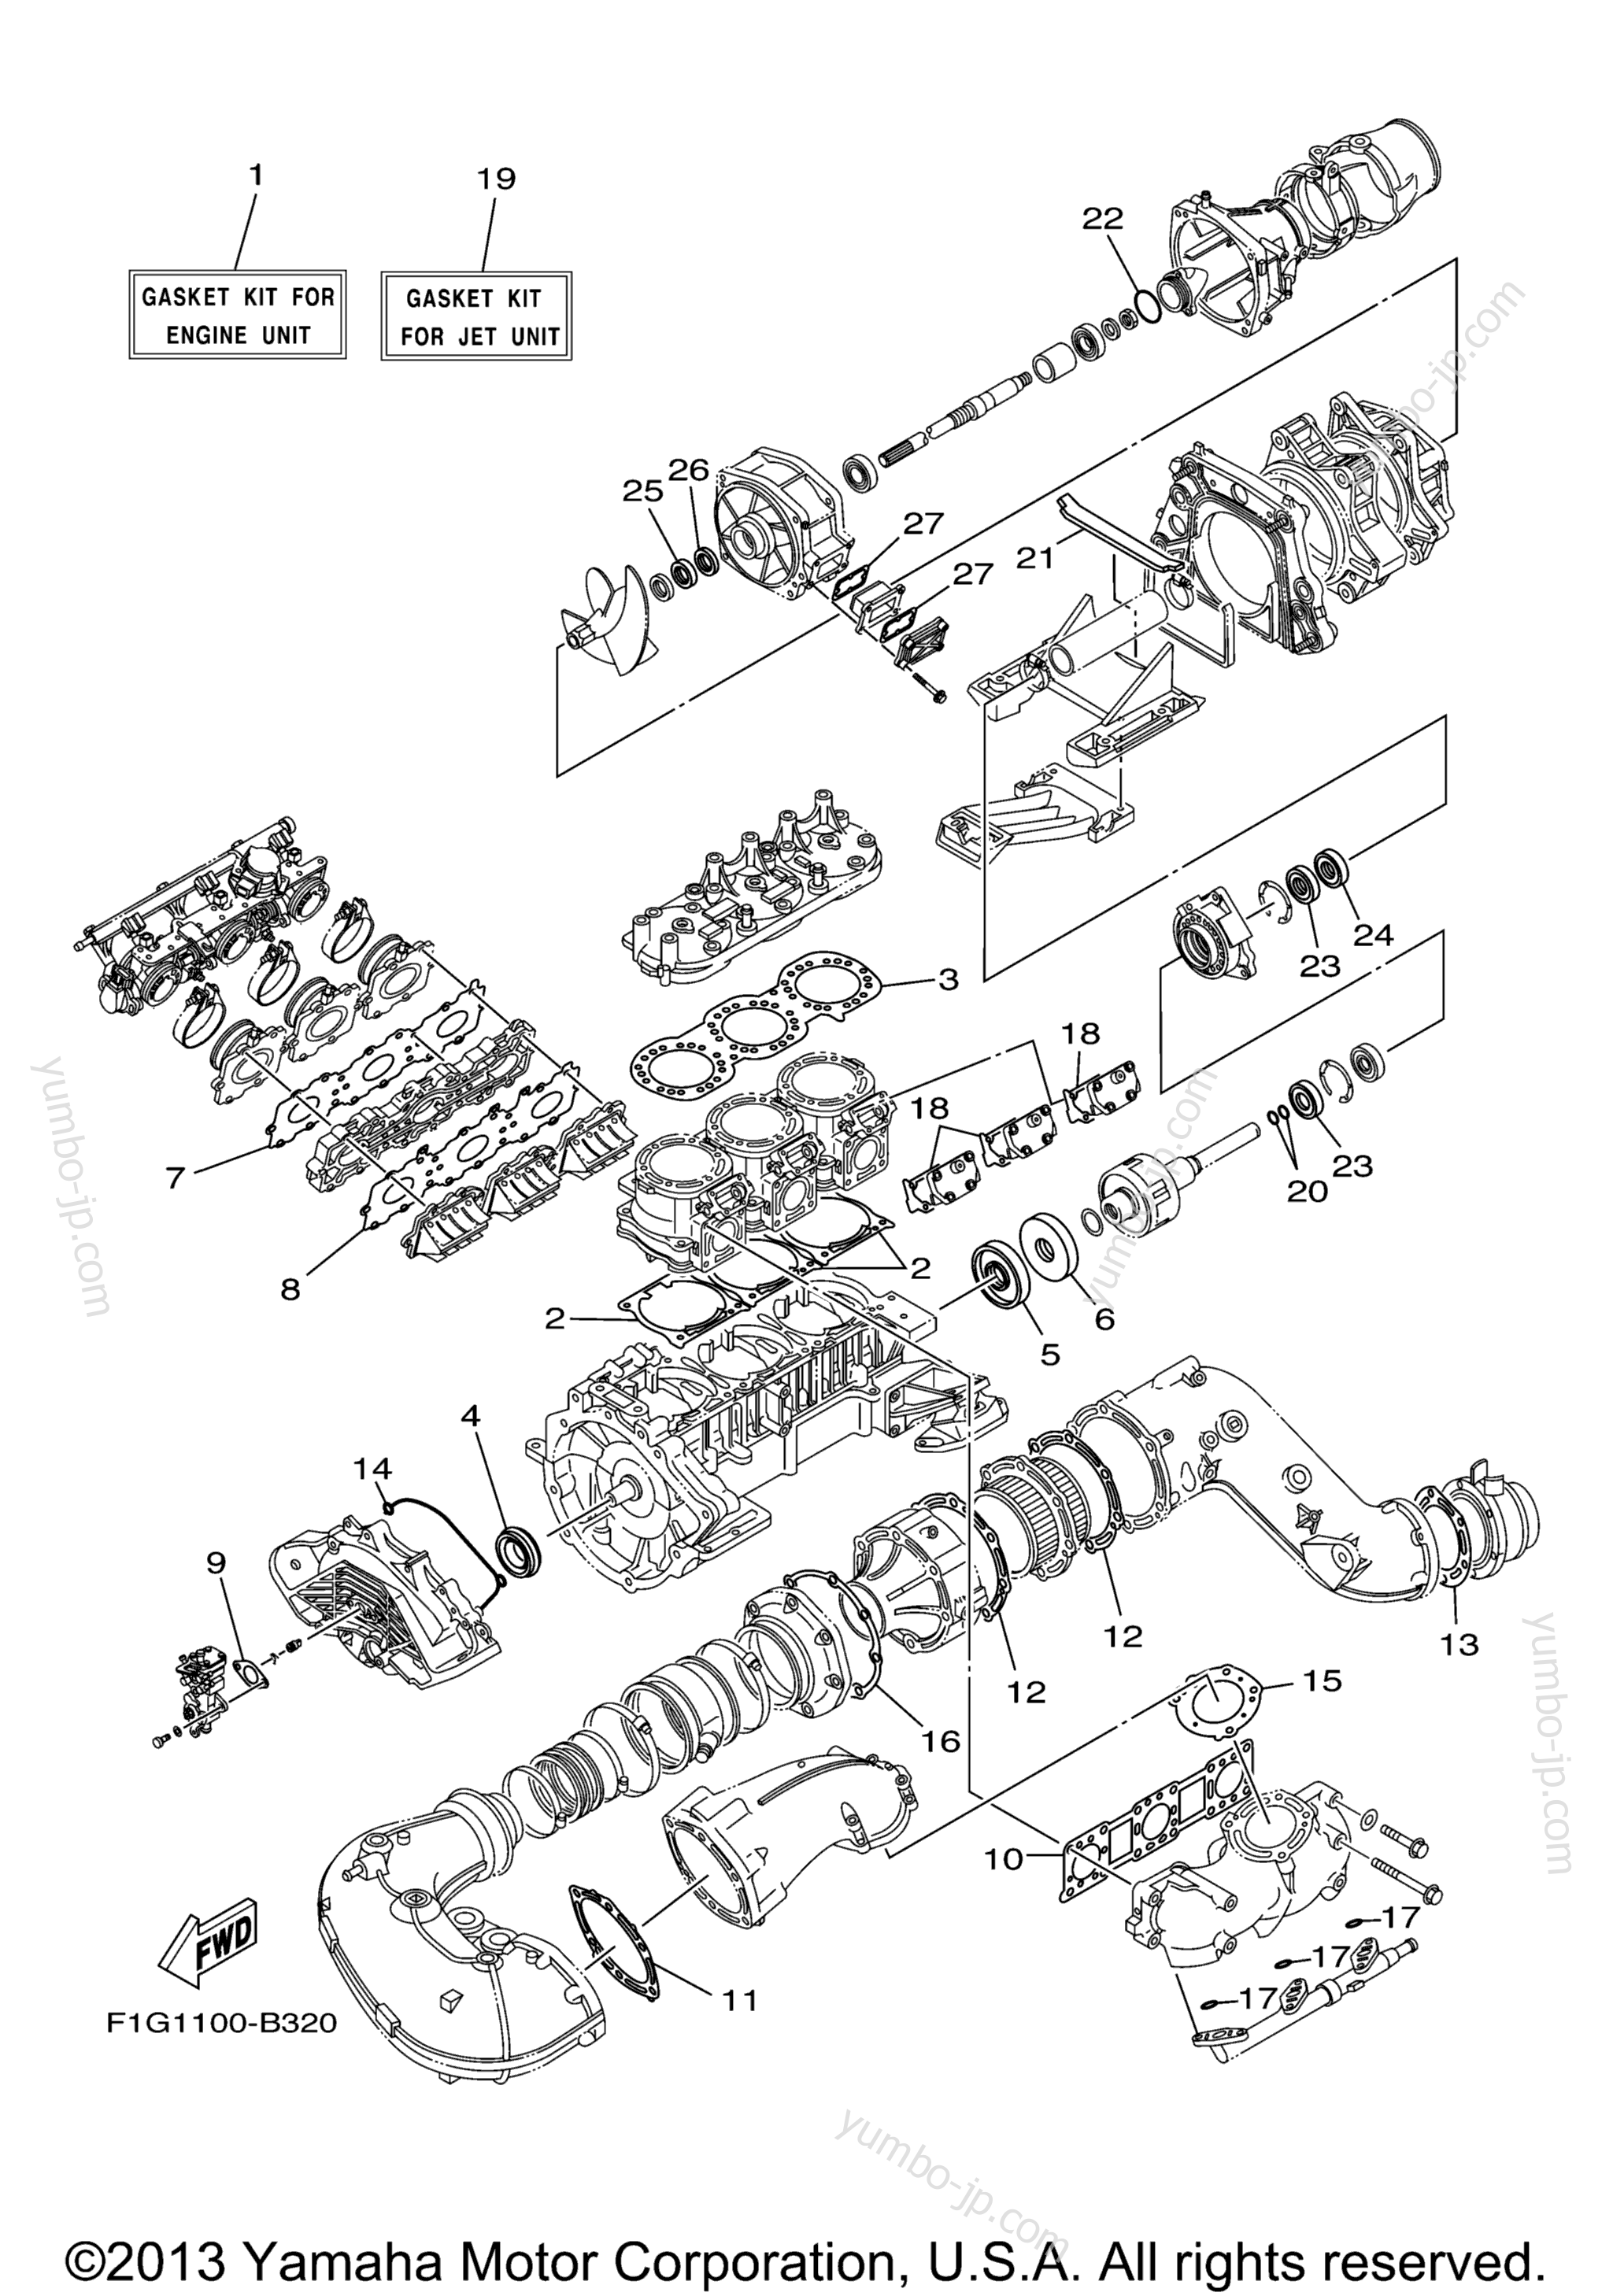 Repair Kit 1 для гидроциклов YAMAHA GP1300R (GP1300CB) CA 2003 г.